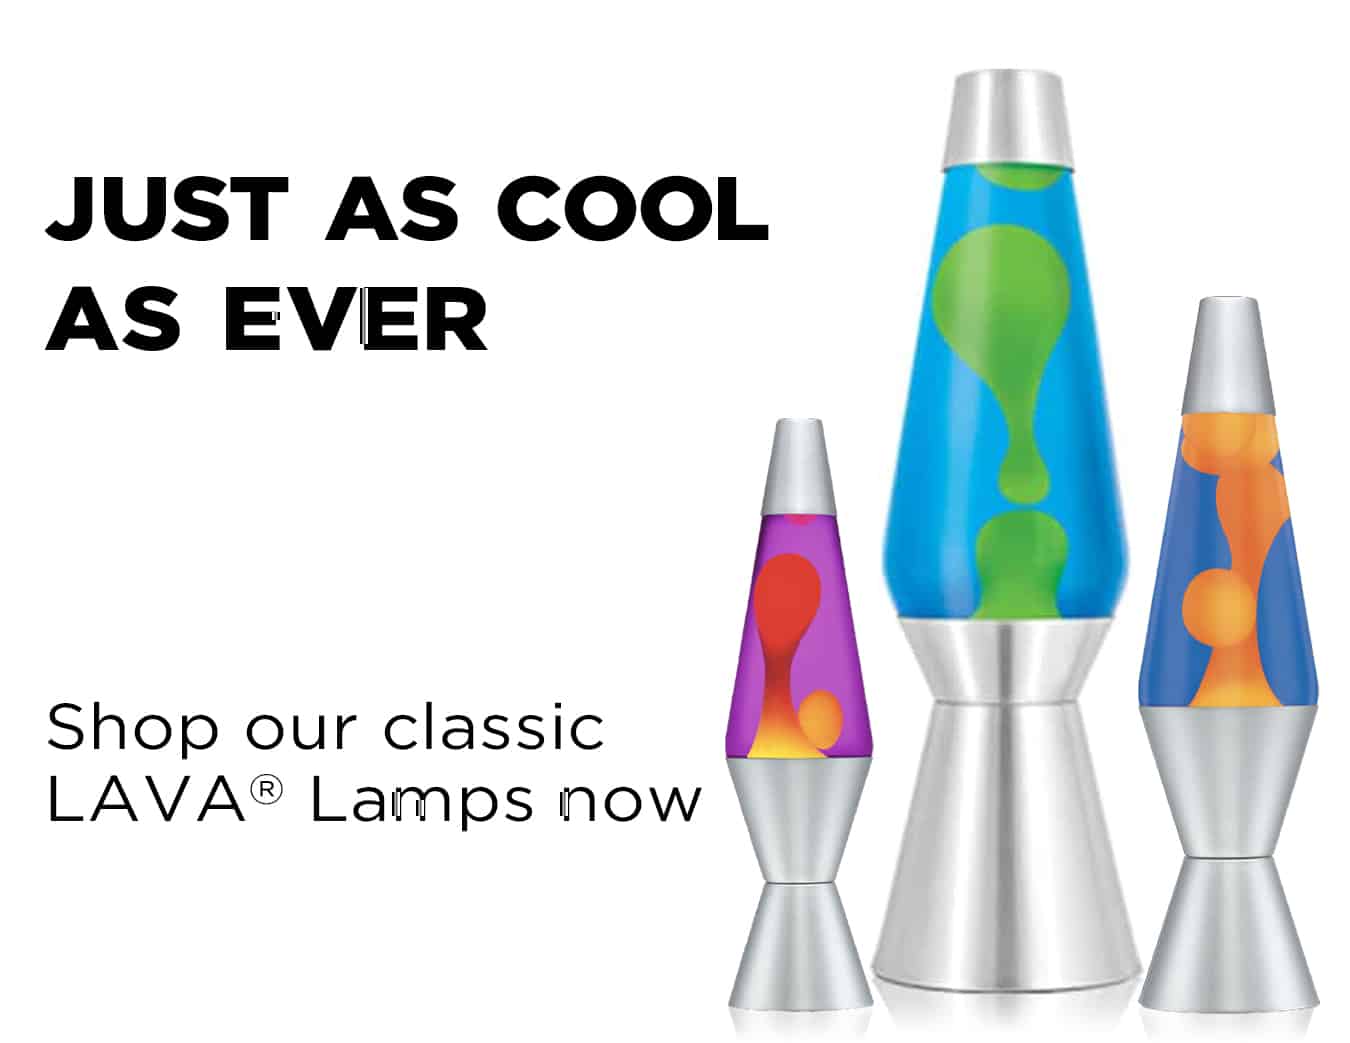 nogmaals dronken Waarneembaar The Original Lava Lamp Company | Fun Decorative Lighting